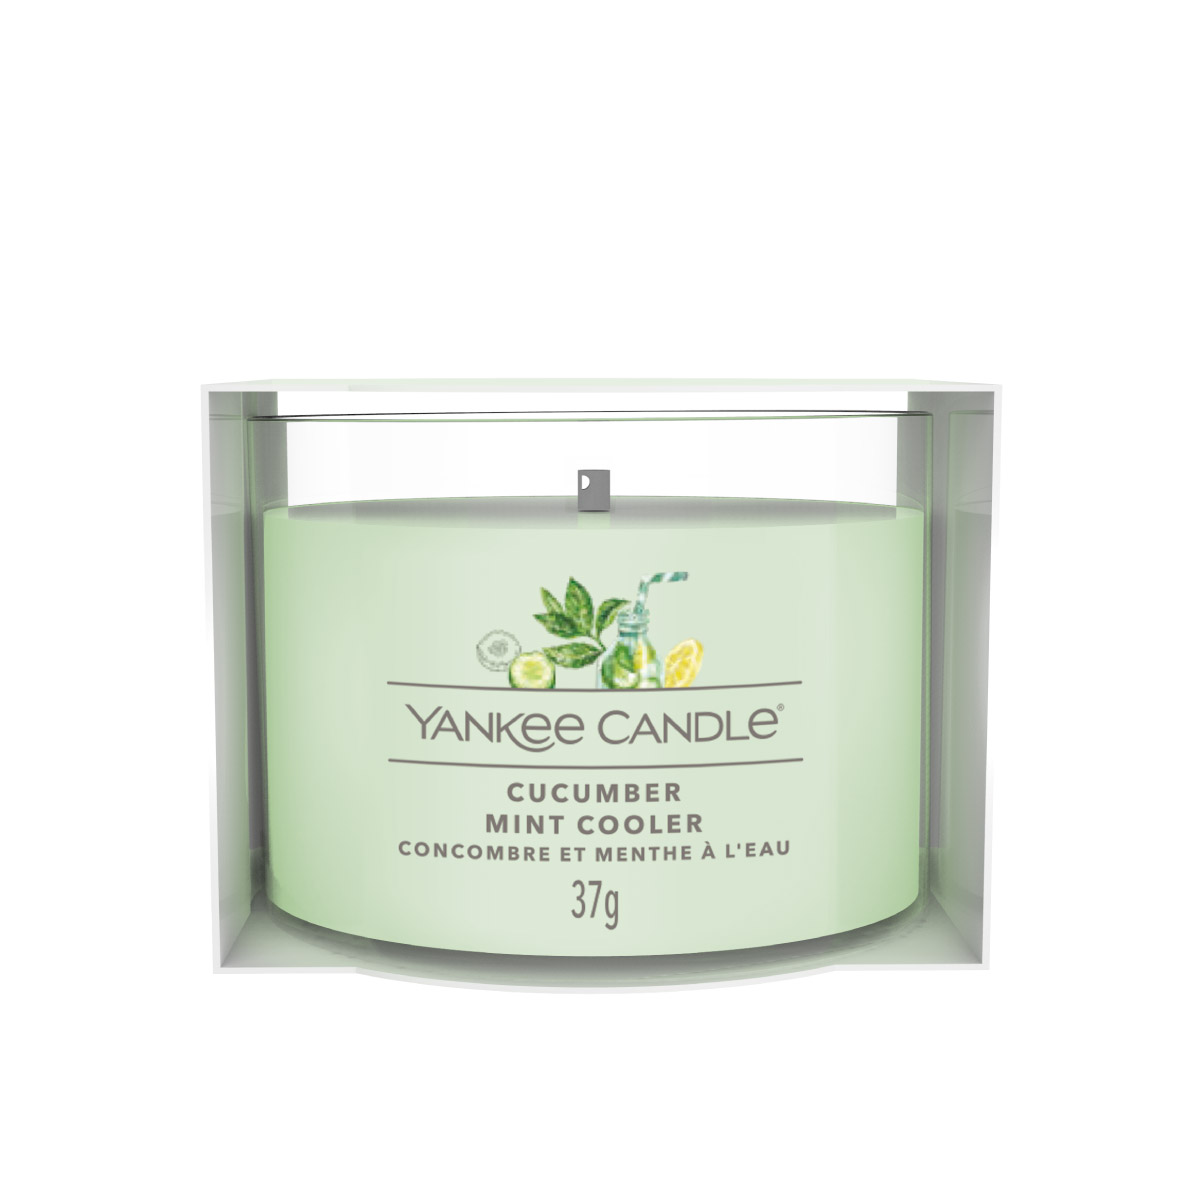 Cucumber Mint Cooler - gefülltes Votivkerzenglas 37g - Yankee Candle®